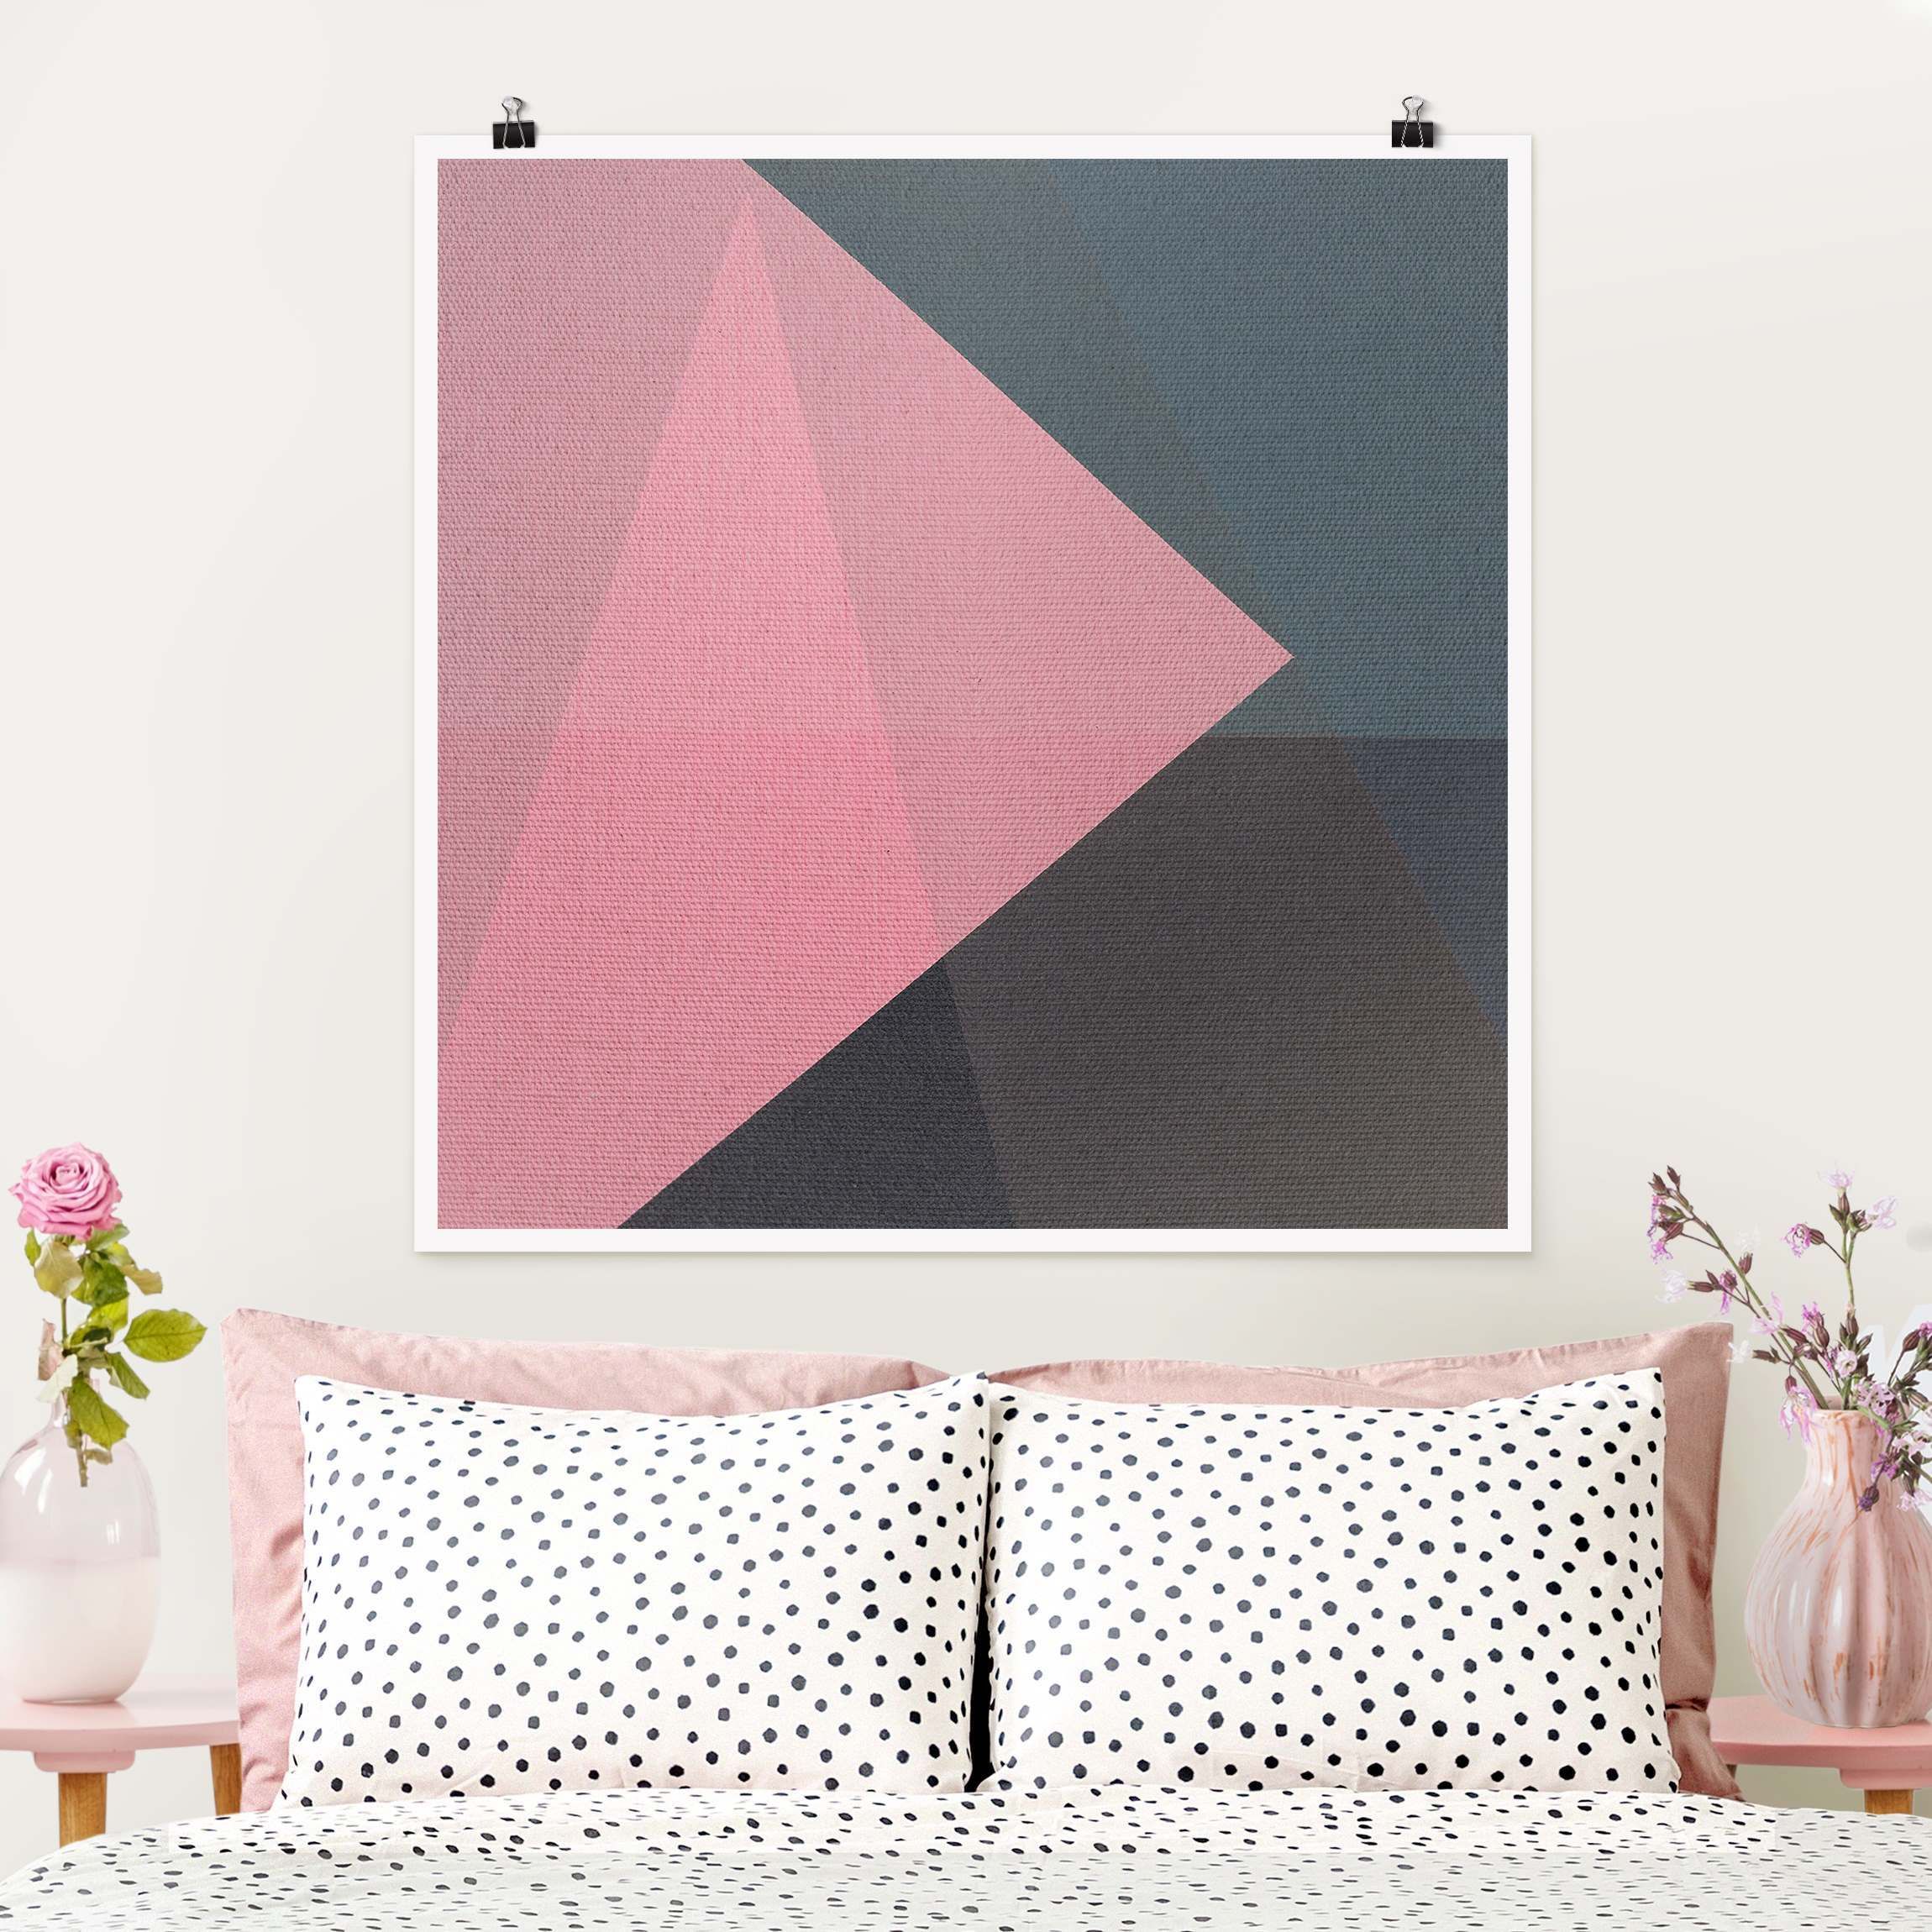 Rosa Transparenz Geometrie Poster als Quadrat | bei Poster bestellen WALLART